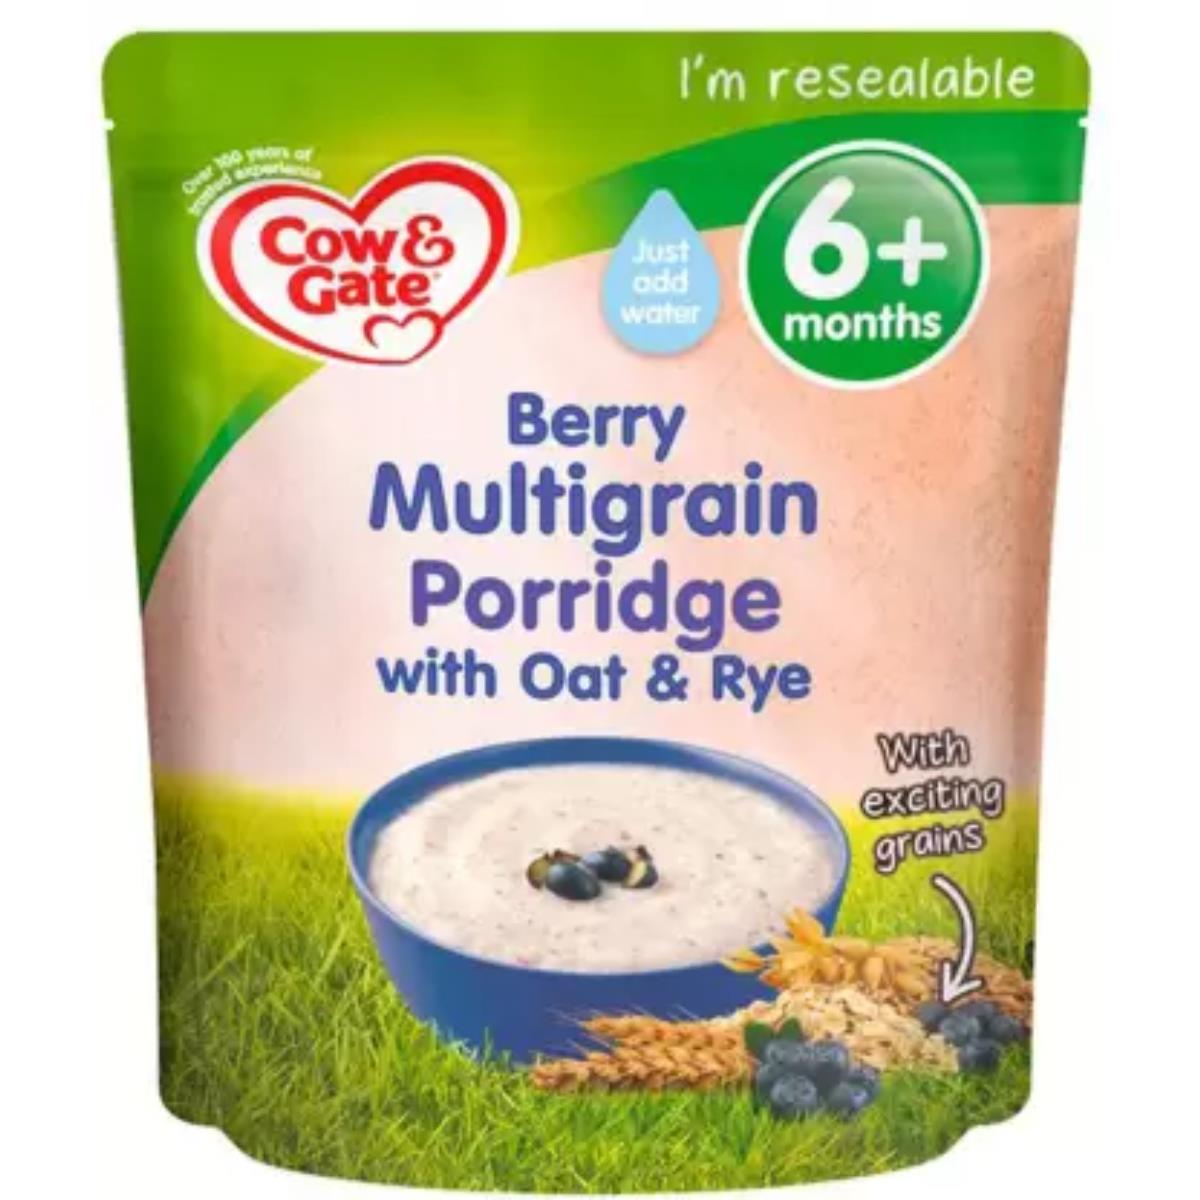 Cow & Gate Berry Multigrain Porridge with Oat & Rye (6m+) - 125g